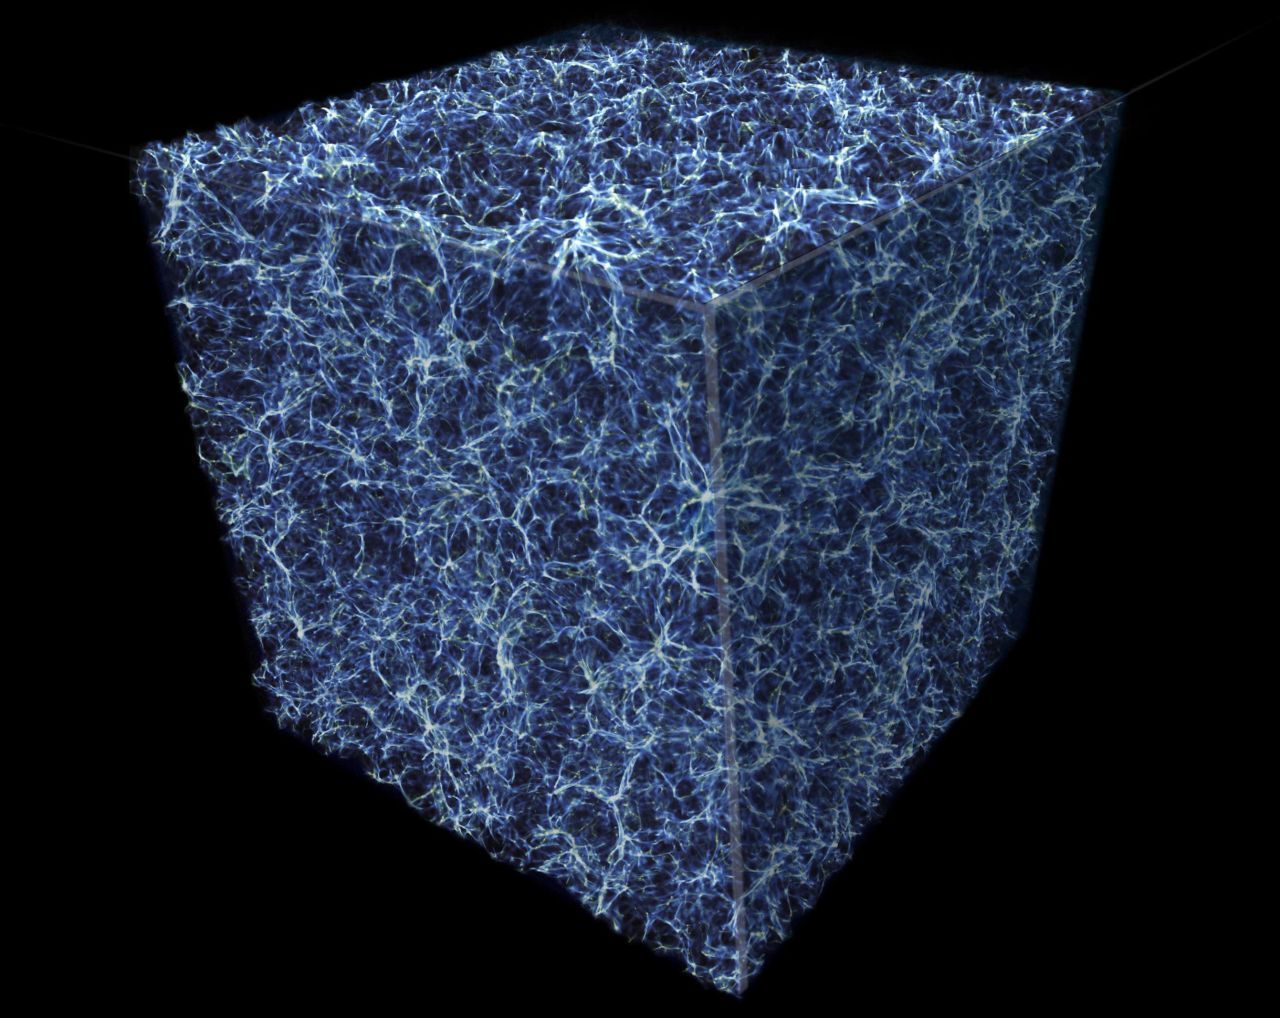 Das Universum selbst: So deuten Wissenschaftler:innen in einer Computer-Simulation die Struktur des Universums. Ansammlungen von dunkler Materie und Super-Galaxie-Haufen umgeben riesige leere Räume.